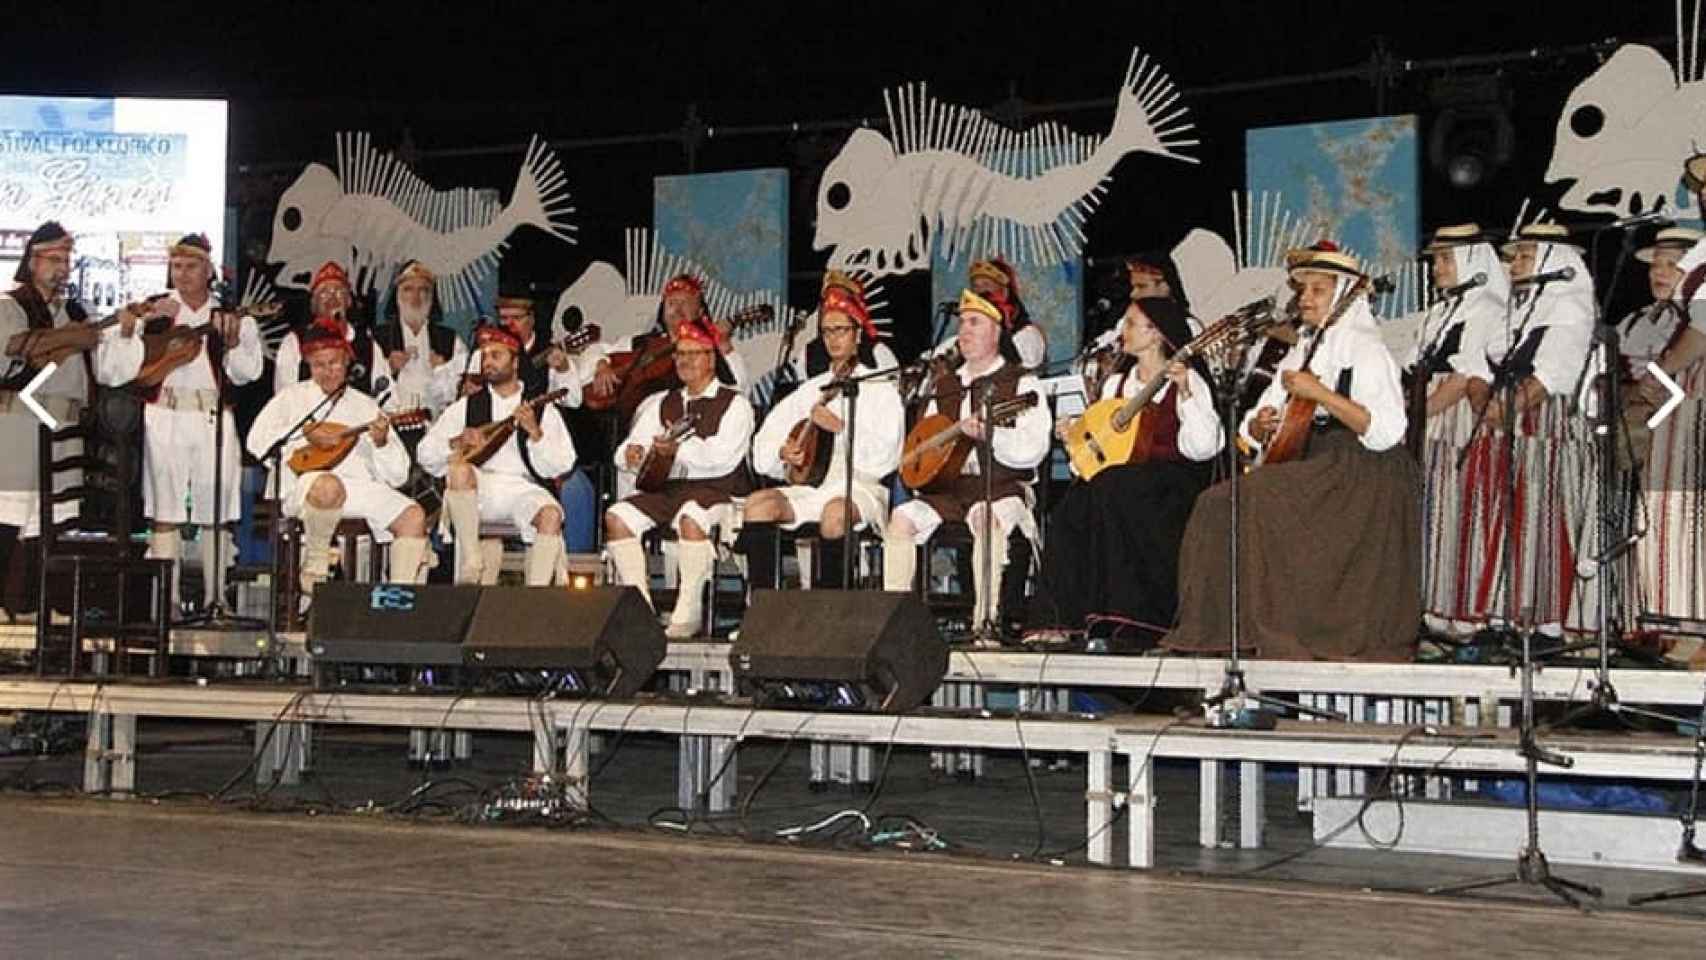 La Agrupación Folclórica Coros y Danzas de Arrecife, donde Doramas tocaba la bandurria.